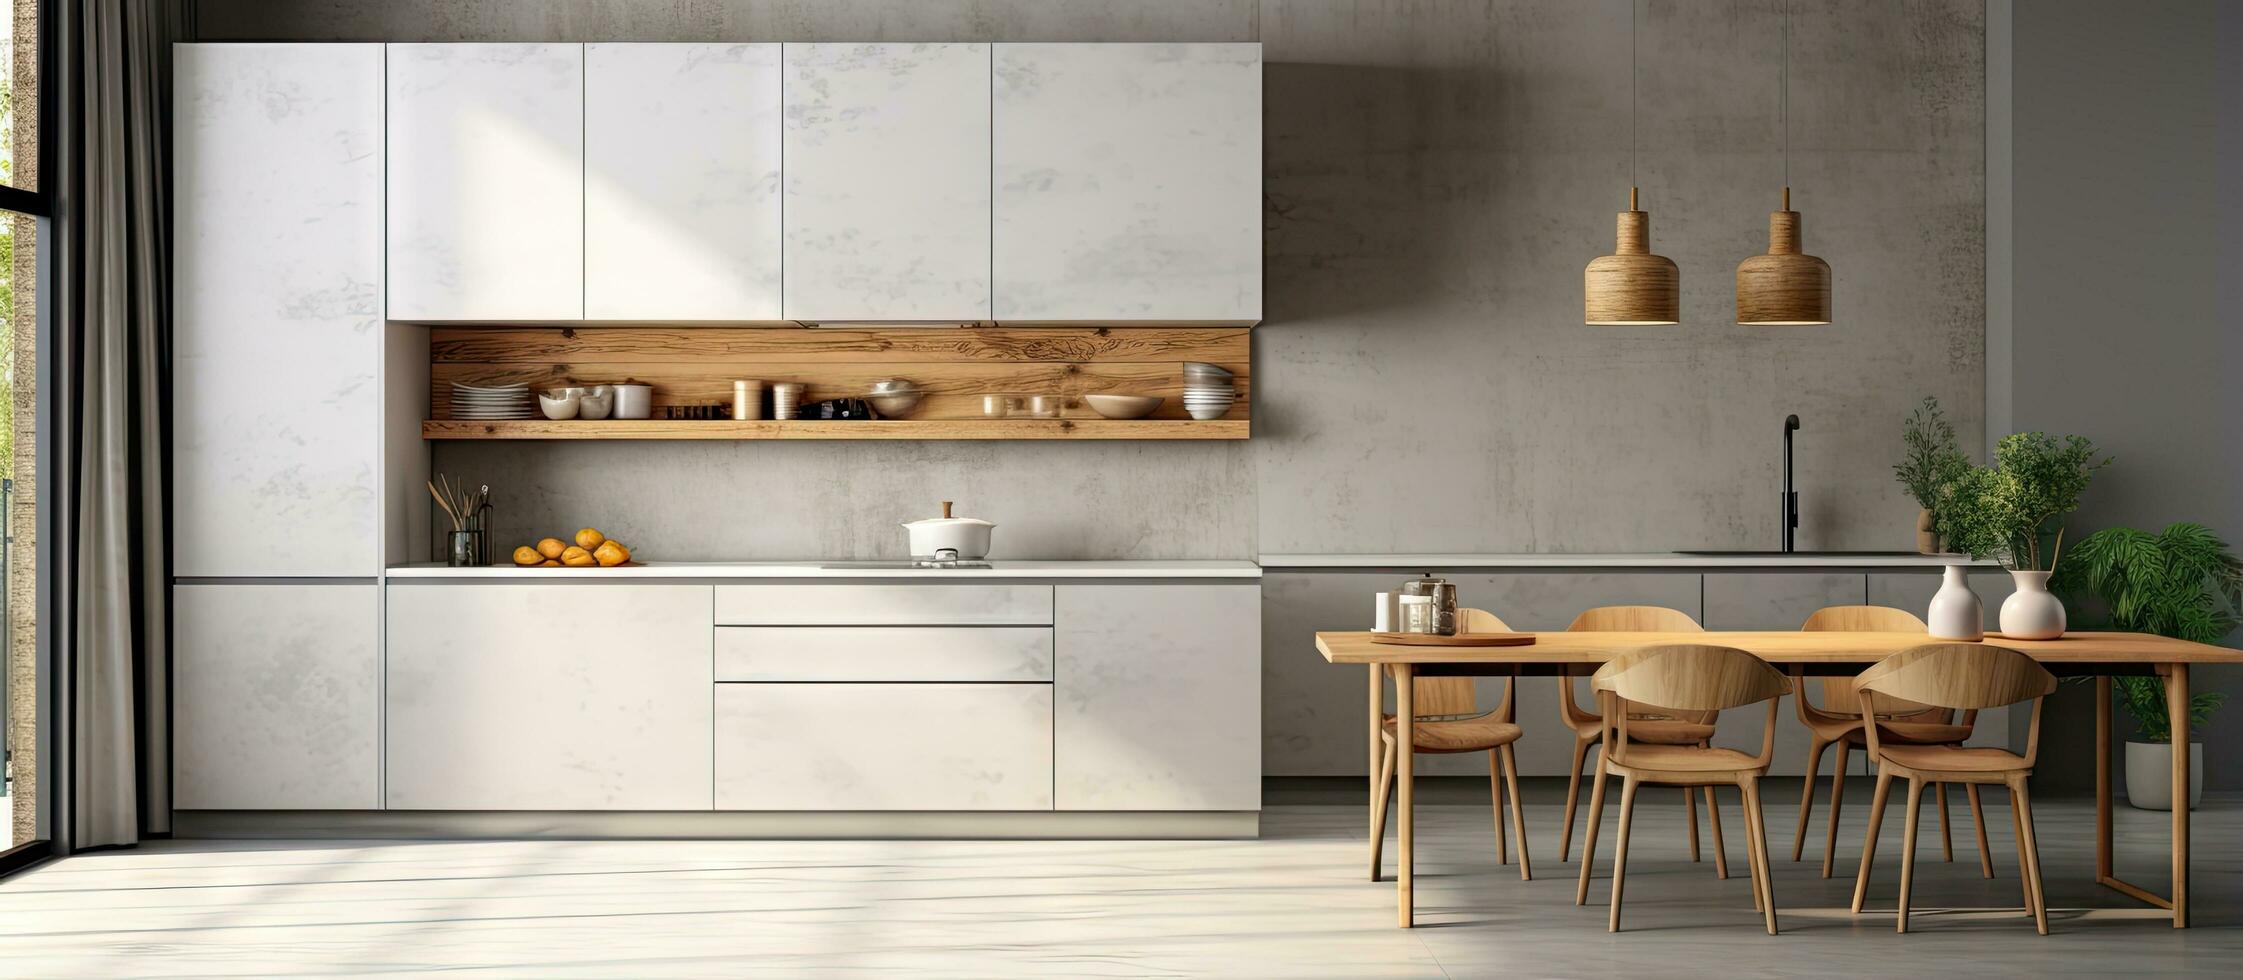 Modern kitchen with a chic interior photo